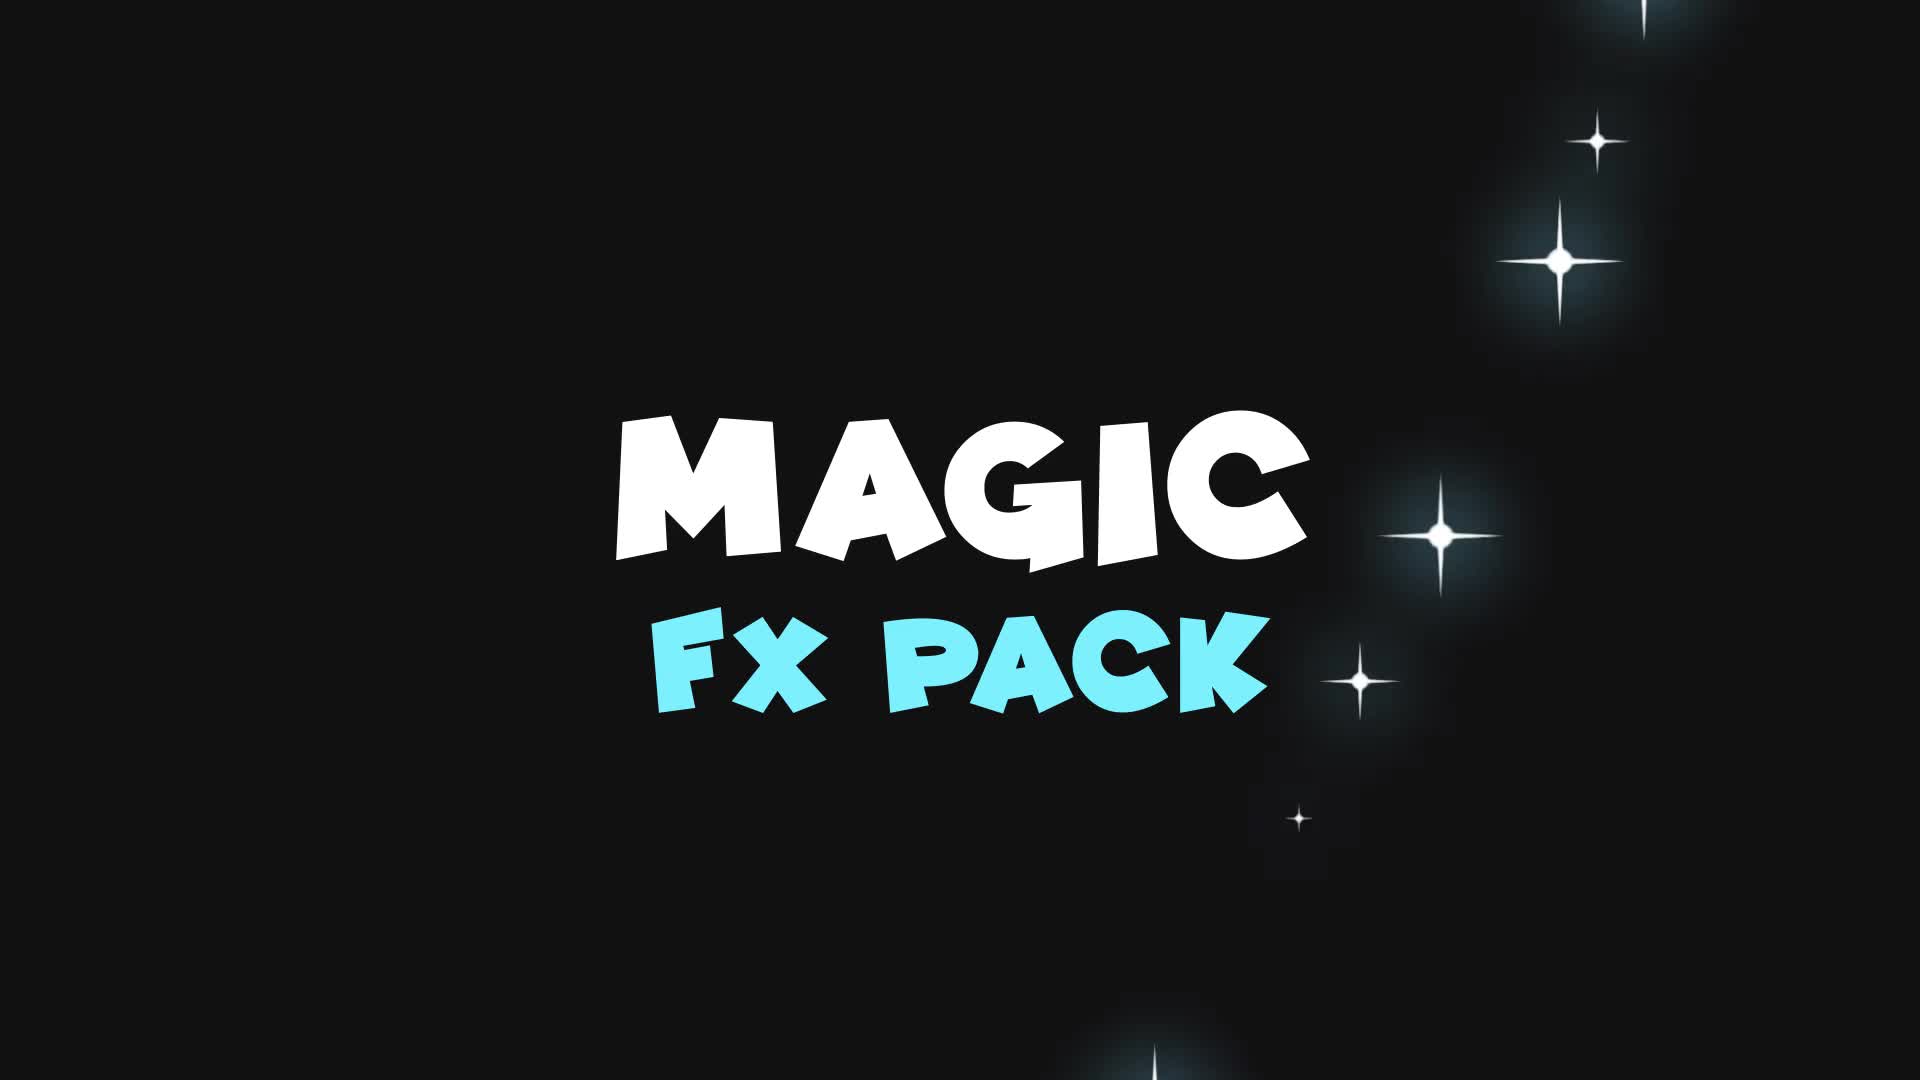 Magic FX Pack | Premiere Pro Videohive 37897644 Premiere Pro Image 1